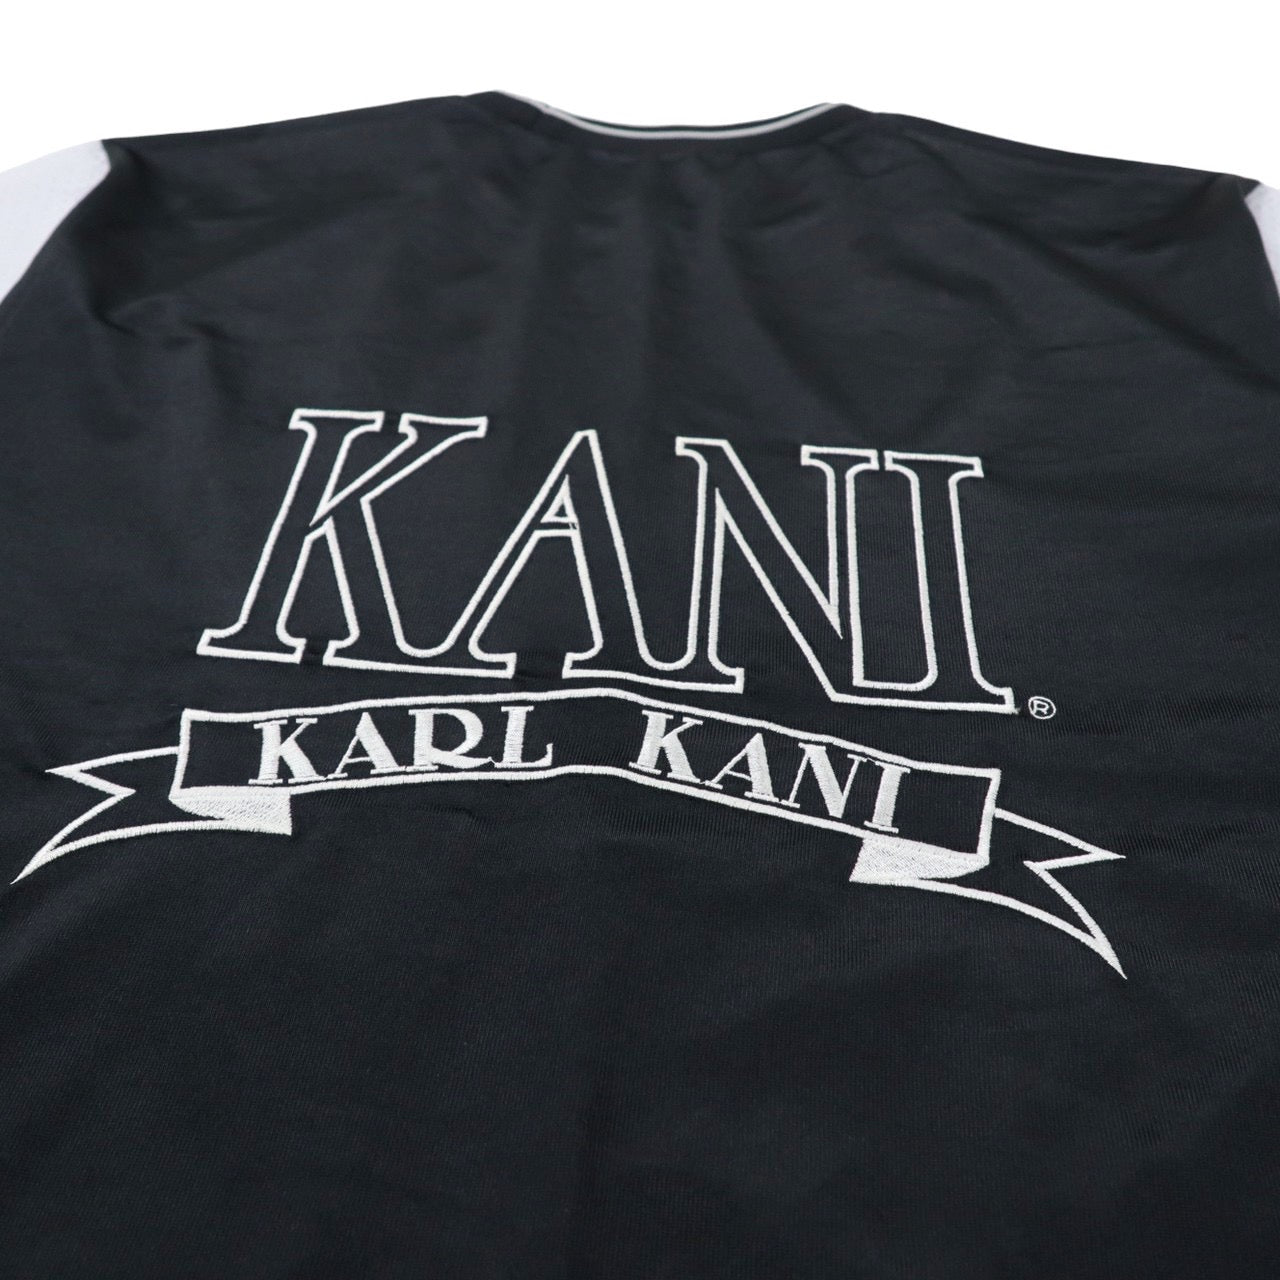 KANI SPORT ( KARL KANI ) ゲームシャツ メッシュ切替 Tシャツ M 